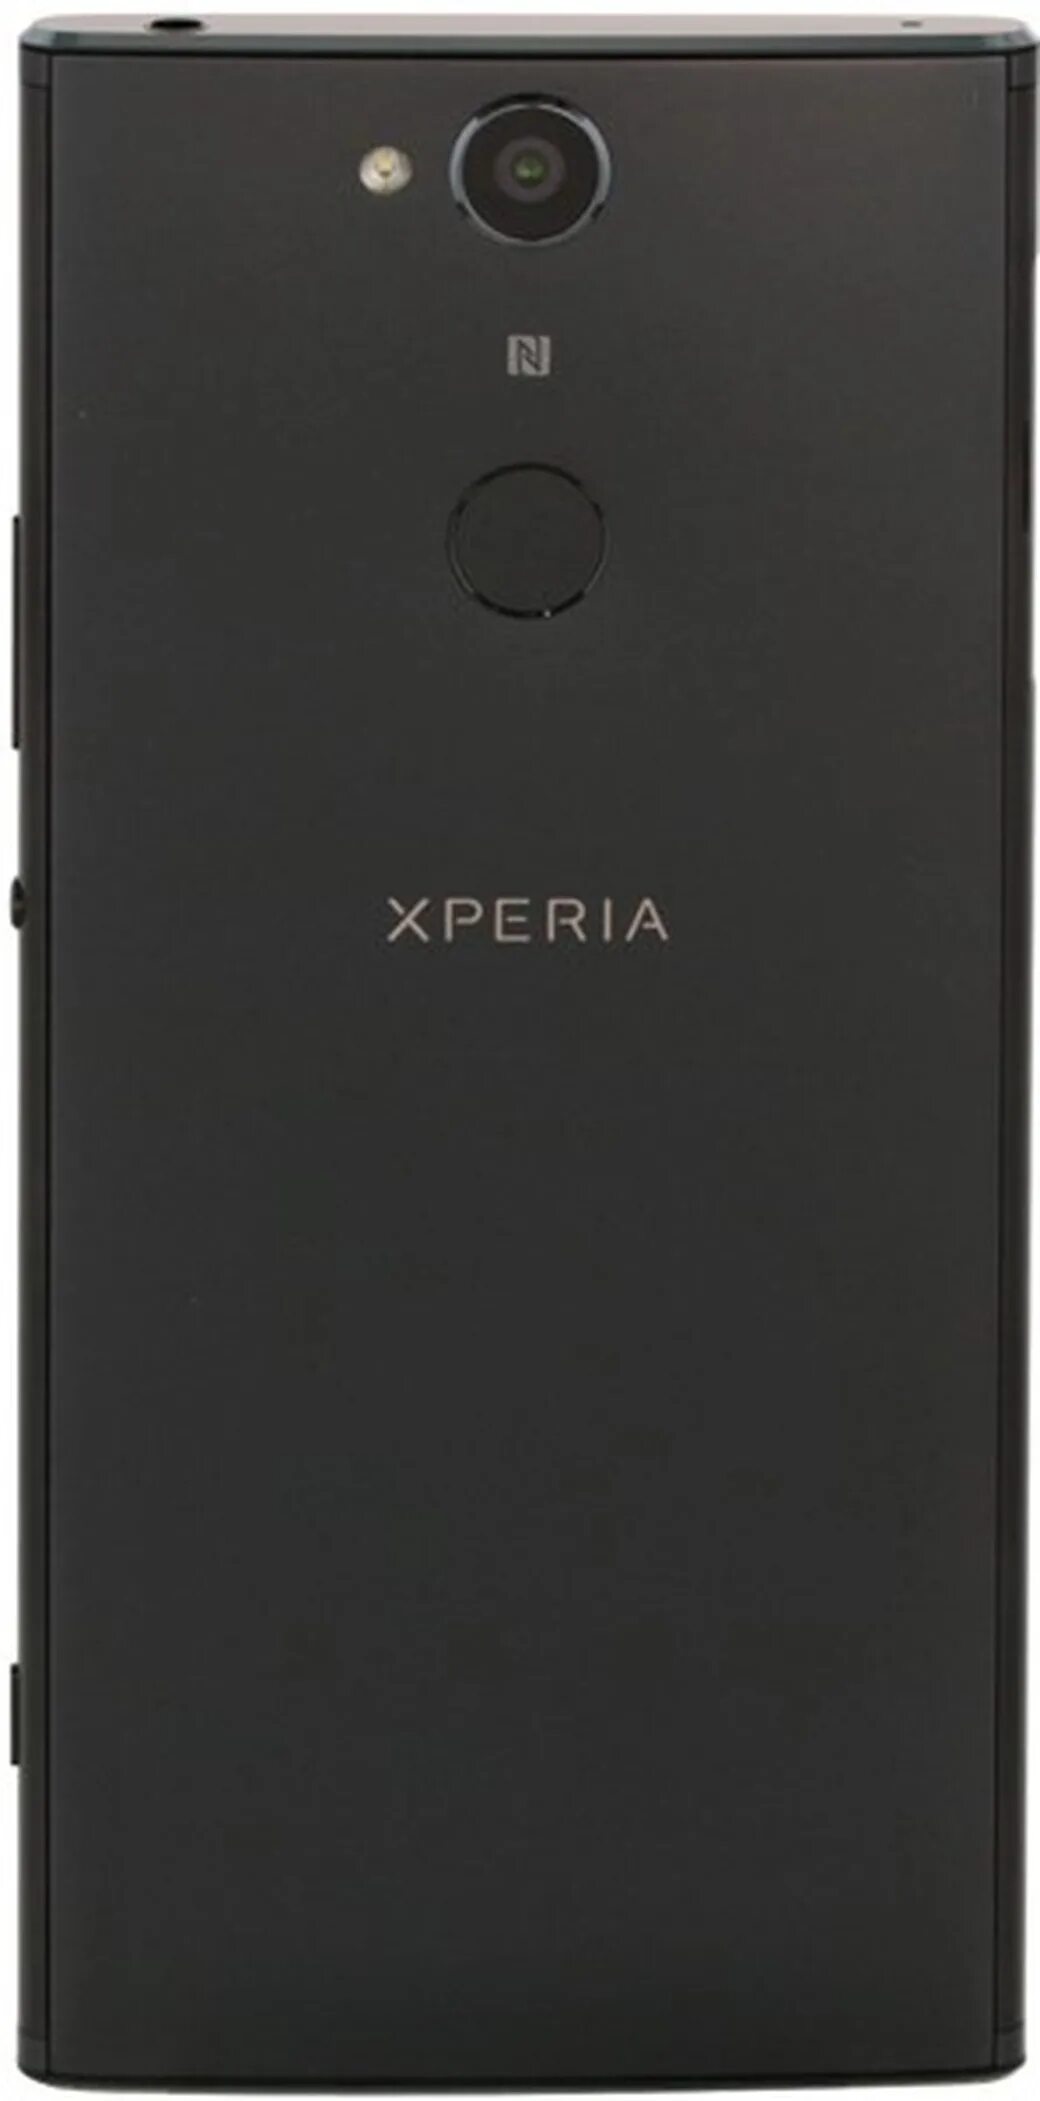 H4113 xperia. Sony Xperia xa2. Sony Xperia xa2 Dual. Sony Xperia h4113. Sony Xperia xa2 Dual h4113.